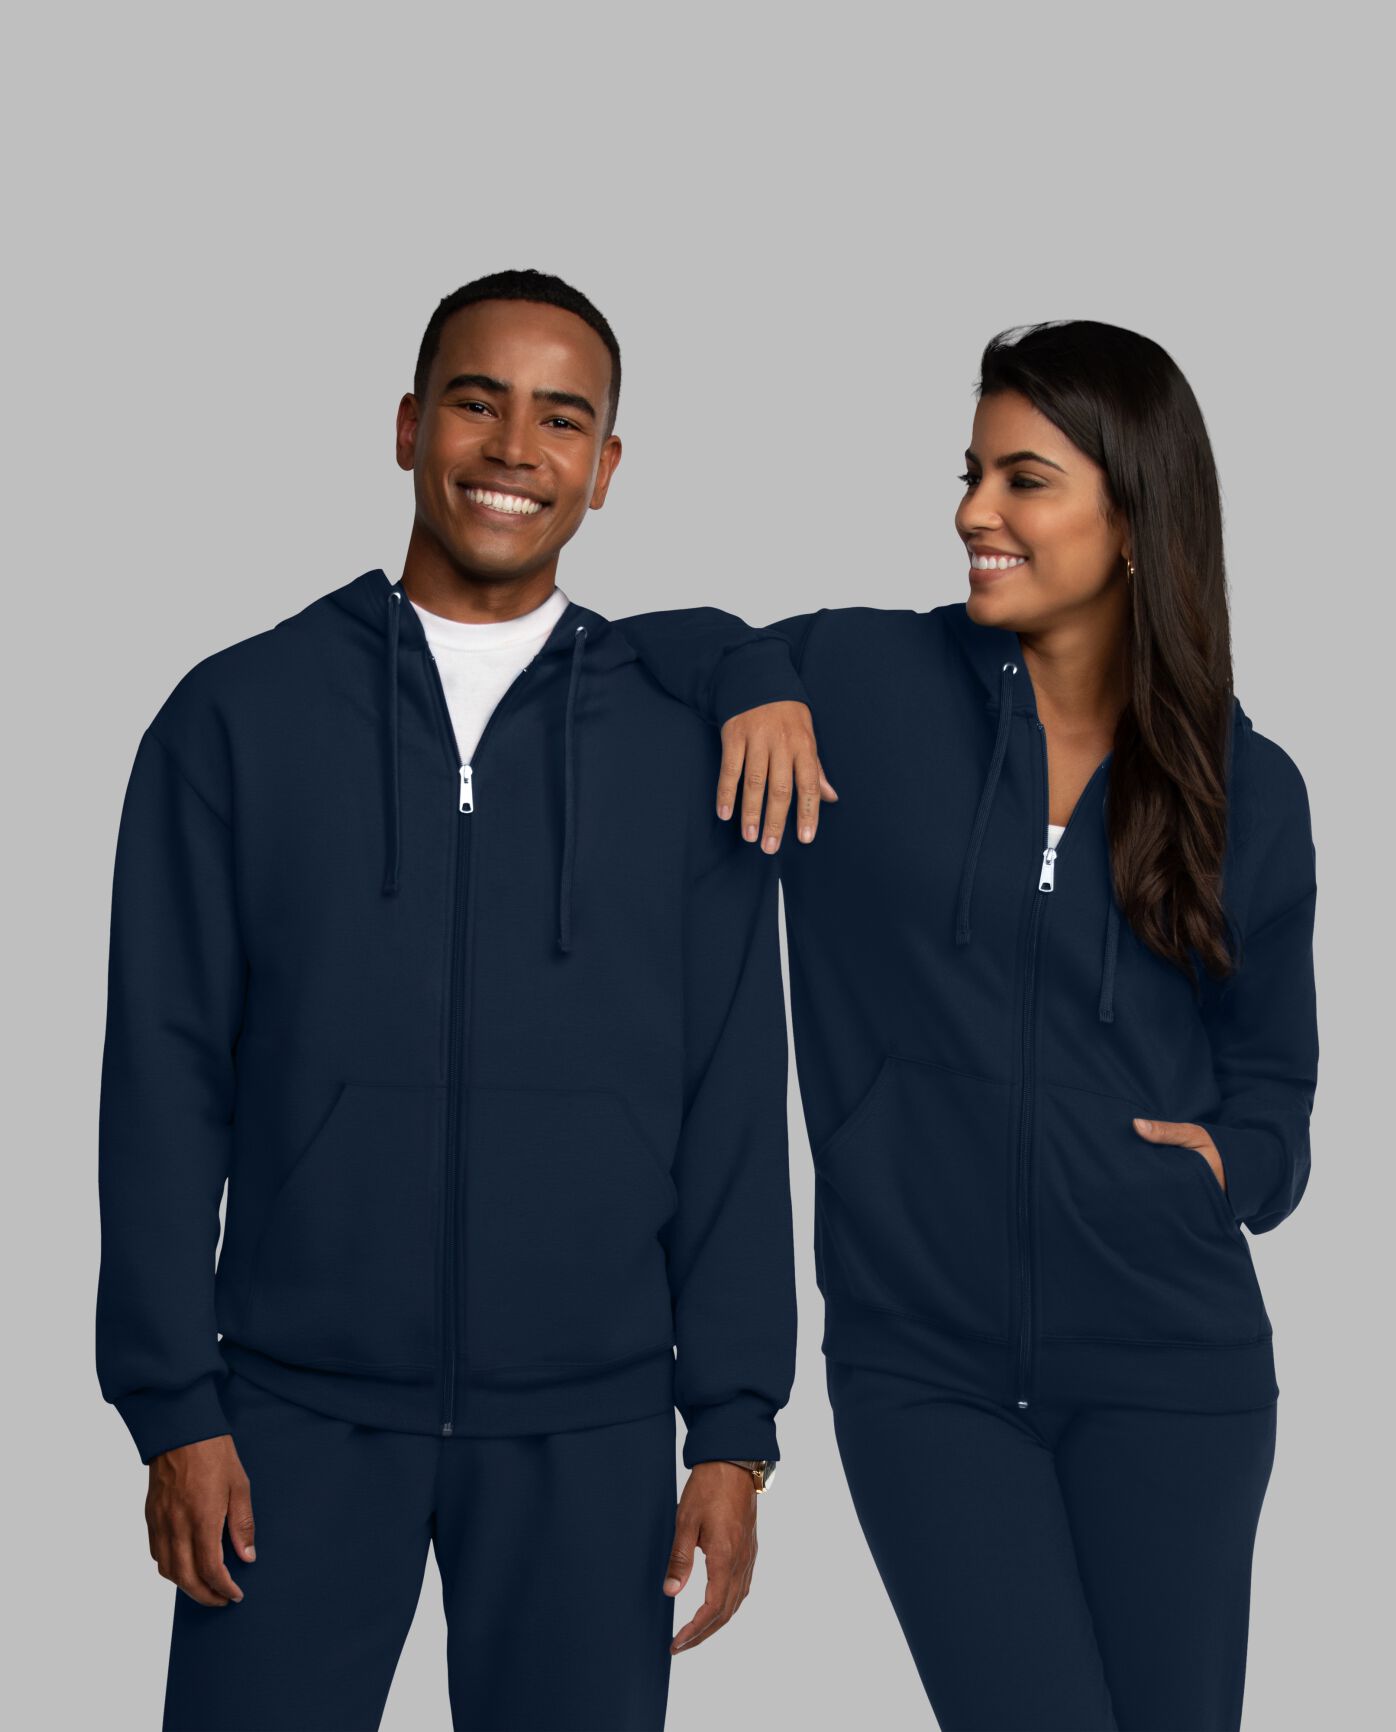 Eversoft® Fleece Full Zip Hoodie Sweatshirt Navy